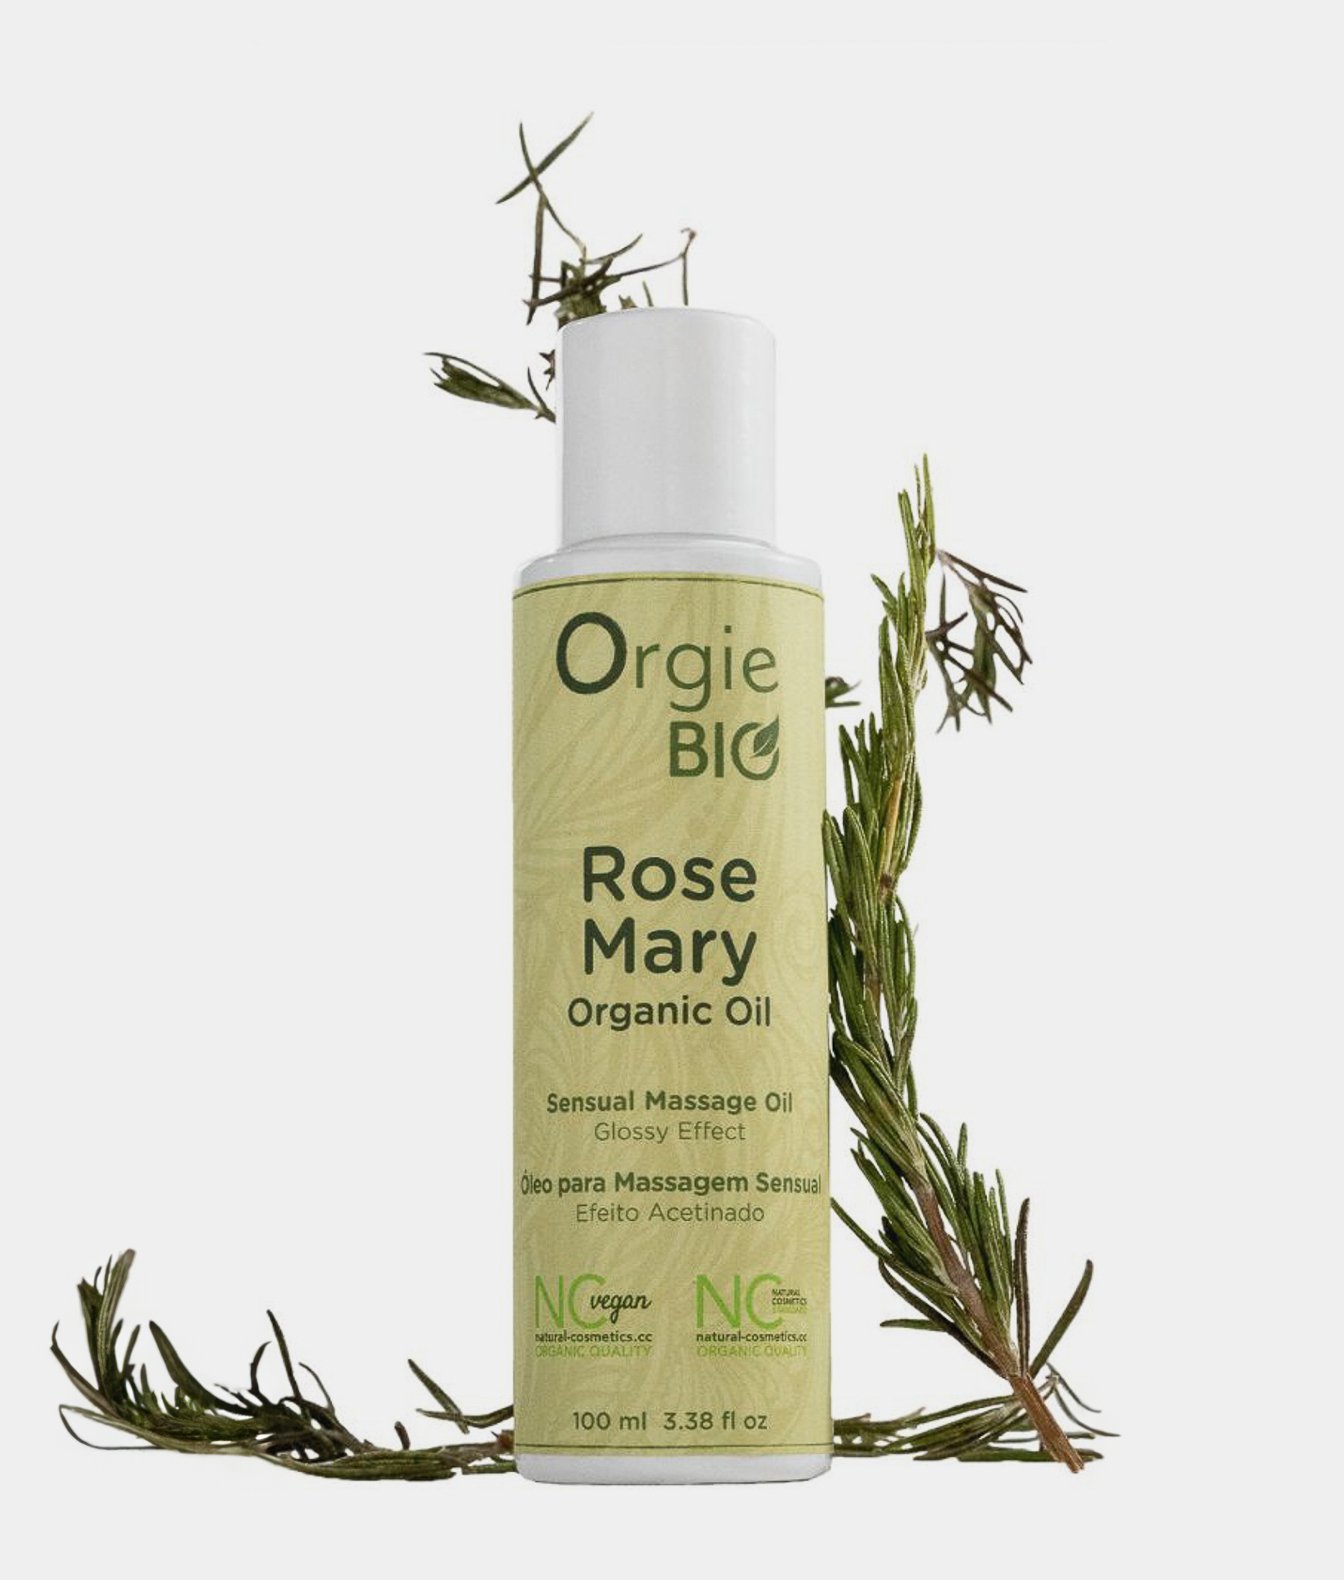 Orgie Bio organiczny olejek do masażu